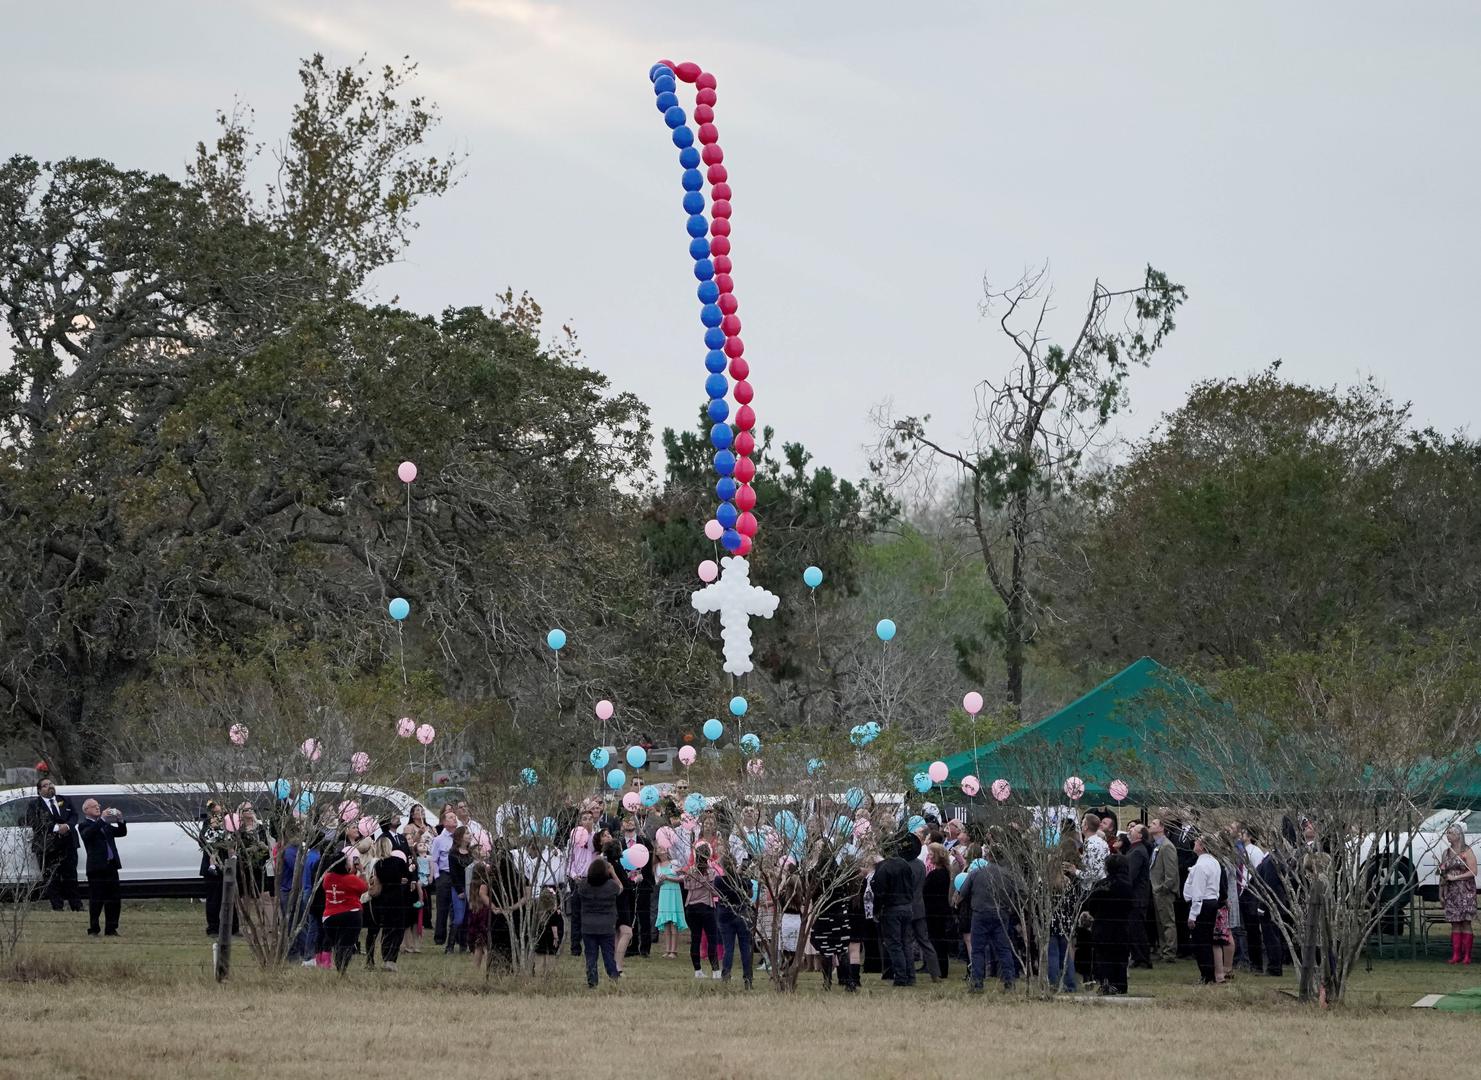 Crkva u Sutherlandu u Teksasu: 26 mrtvih – 
U nedjelju 5. studenoga 2017. muškarac je ubio 26 ljudi u crkvi u Sutherlandu u Teksasu. Ranio je dvadesetak osoba. Policija je pronašla njegovo tijelo u automobilu.